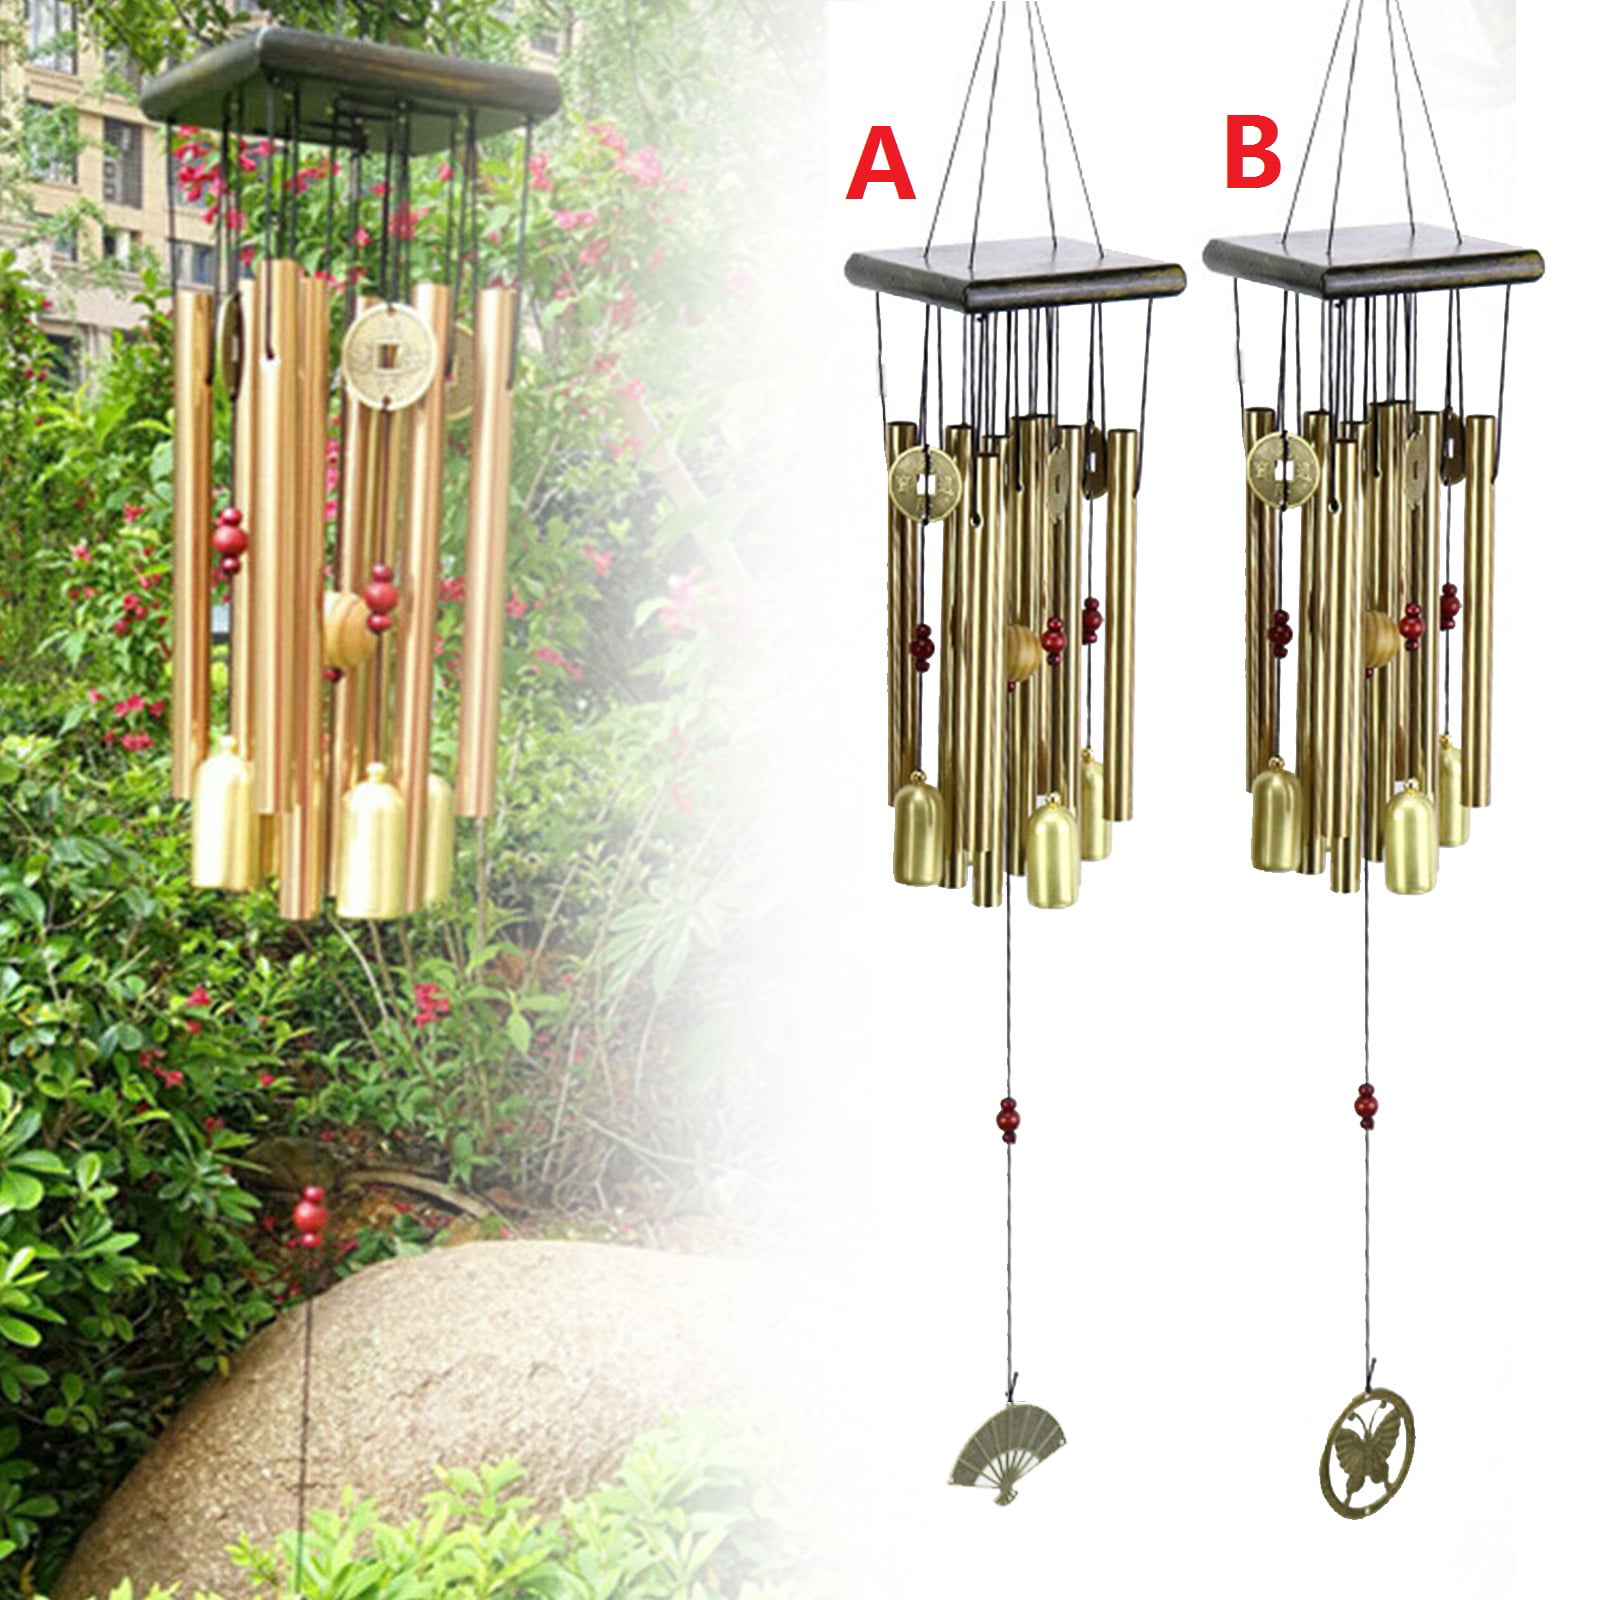 6 Metal Copper Bells Hanging Wind Chimes For Home/Door/Garden Decor & Gifts 